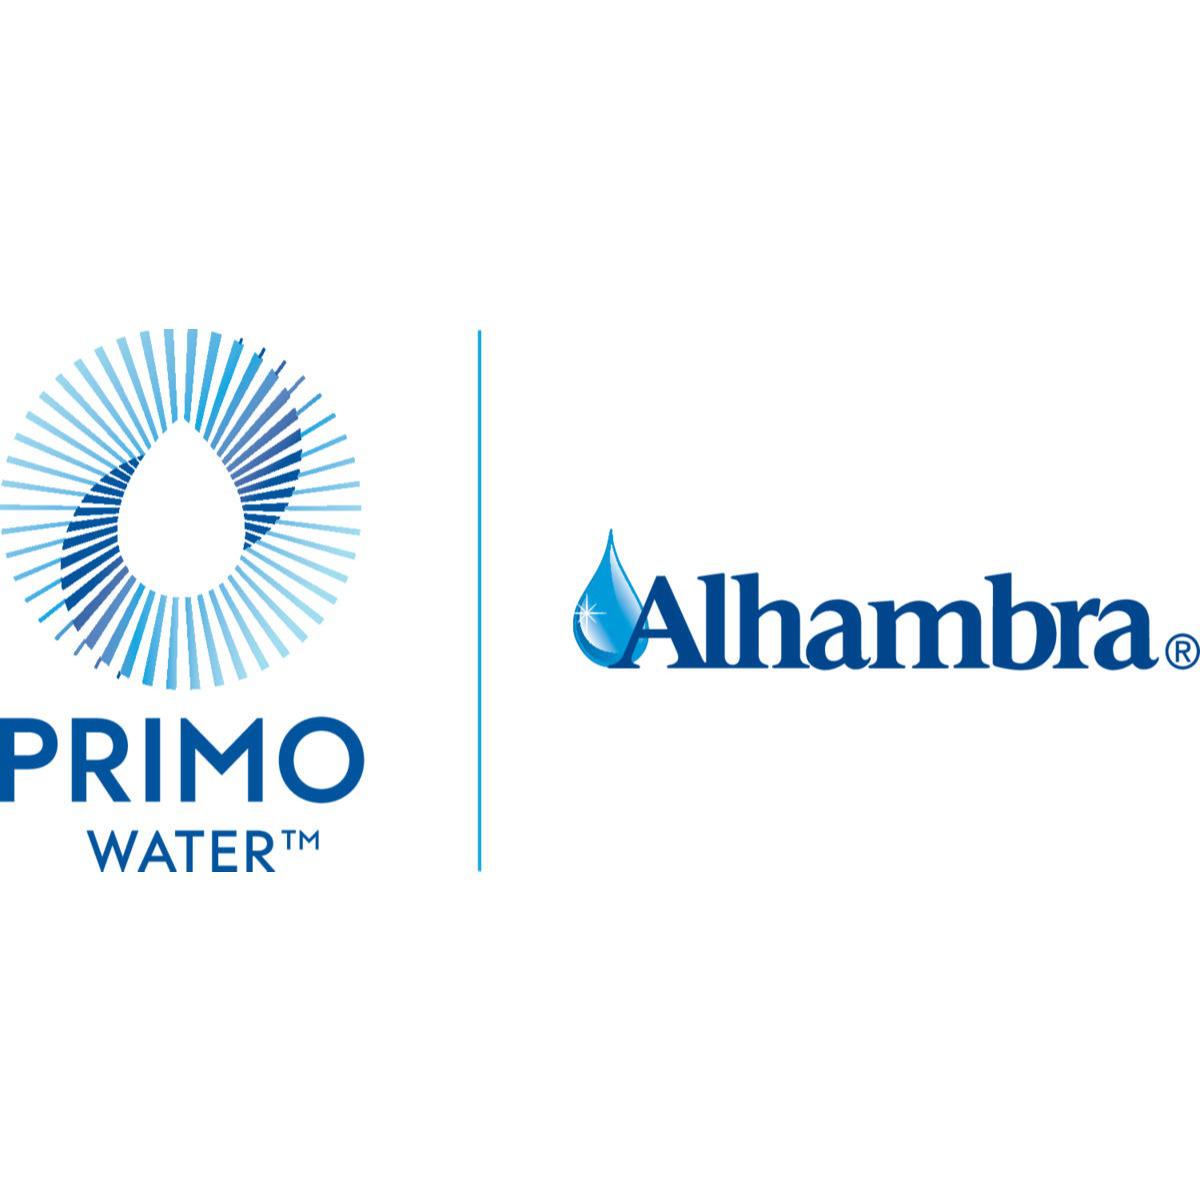 Alhambra Water Delivery Service 4572 - Benicia, CA - (800)492-8377 | ShowMeLocal.com